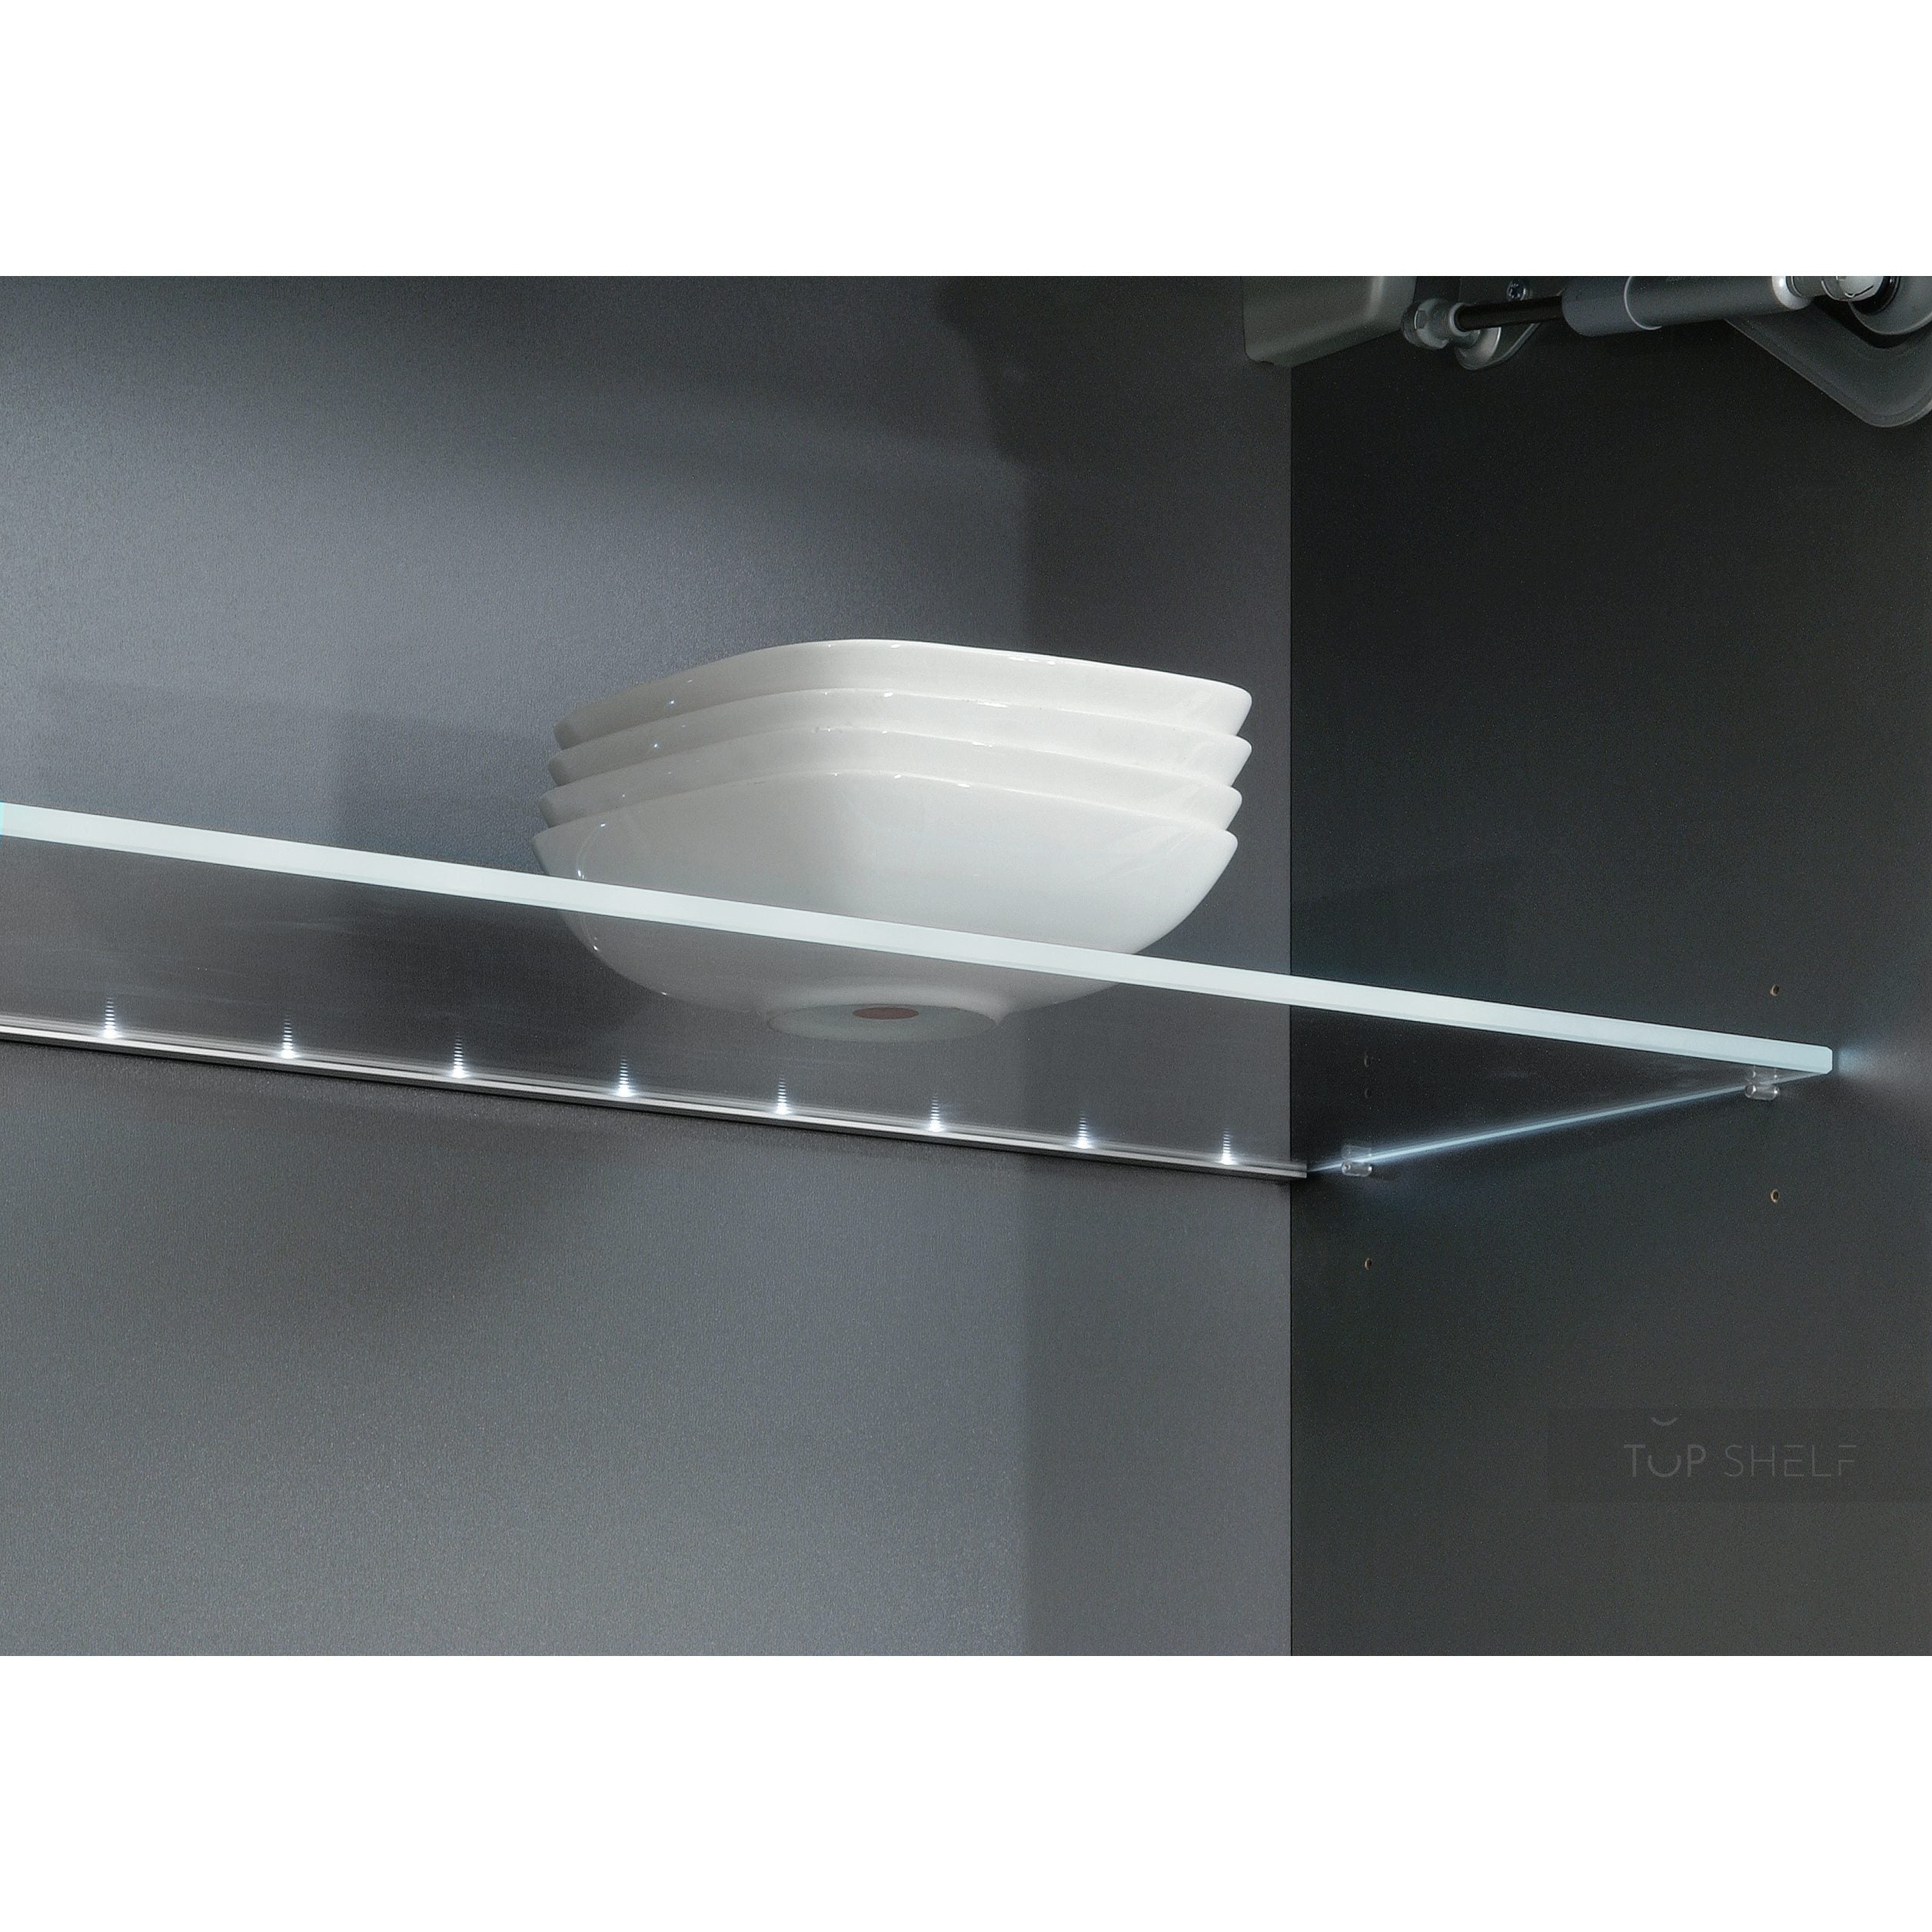 Vertrek naar Afwijking inschakelen Nobilia Glazen legplanken met LED- verlichting van glazen randen voor  wandkasten met glazen GB-WSG50 50 cm - TOP-SHELF.de